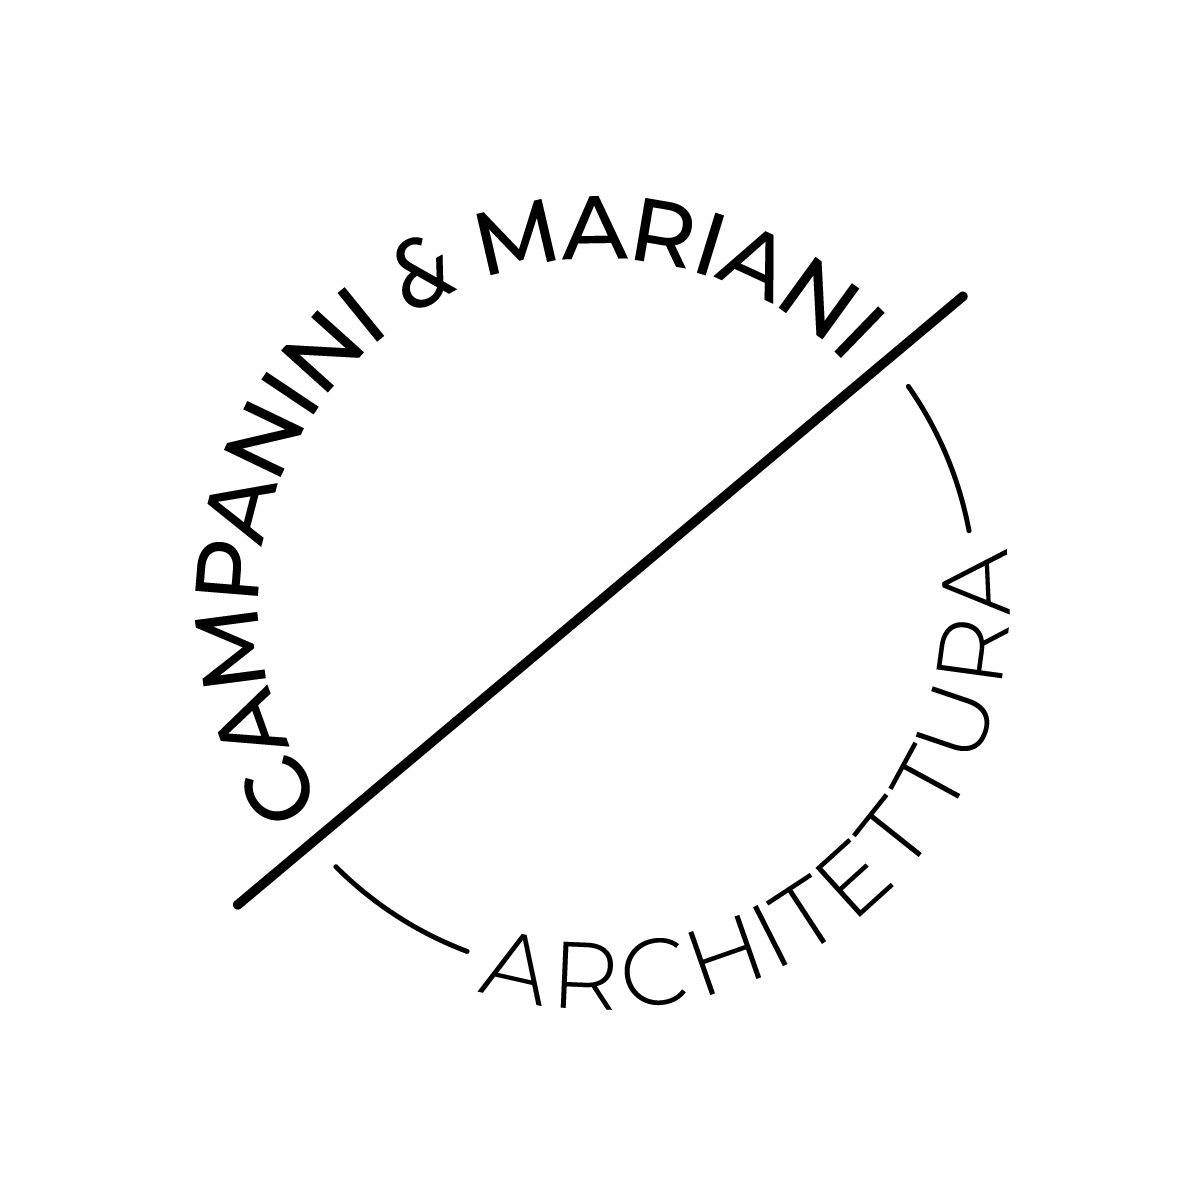 Campanini e Mariani Architettura